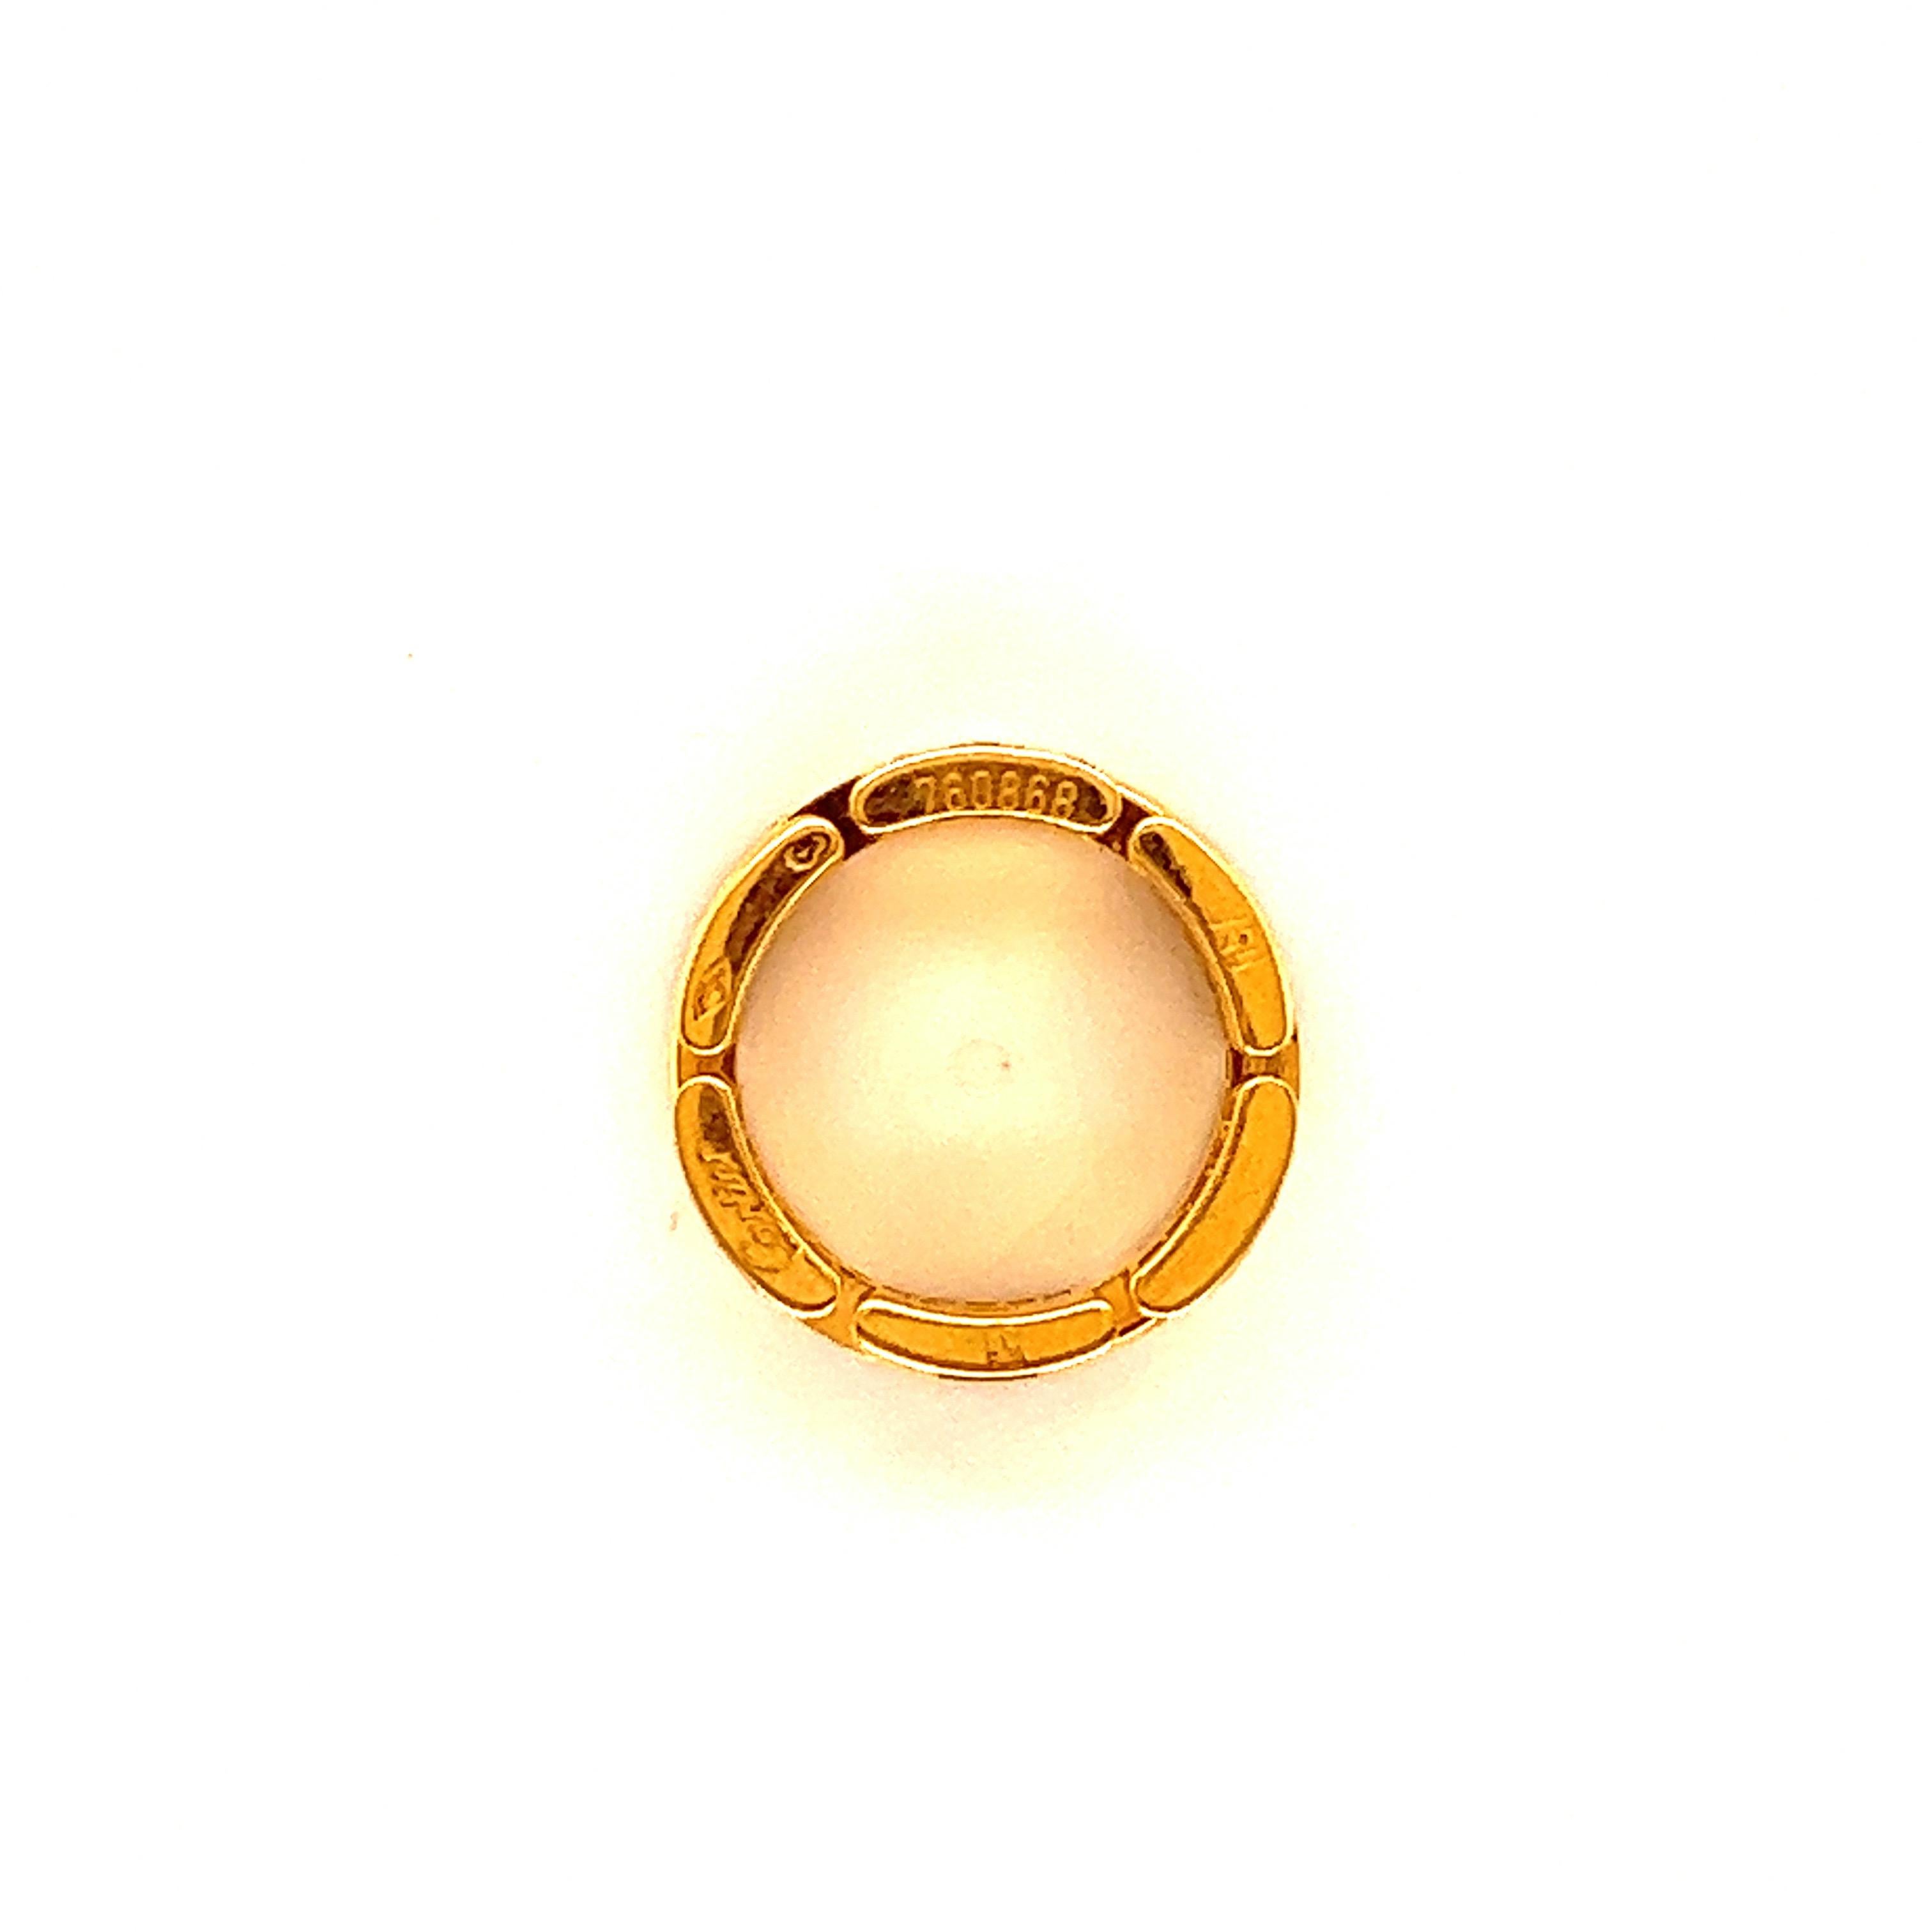 Klassischer Ring Maillon Panthere, 18 Karat Gelbgold, von Cartier. 
Runde Diamanten im Brillantschliff von ca. 1 Karat, die meisten mit Farbe E-F und Reinheit VS, gefasst in 18 Karat Gelbgold; Bandbreite 7,5 mm, Ring ist eine US-Größe 5,5, Cartier